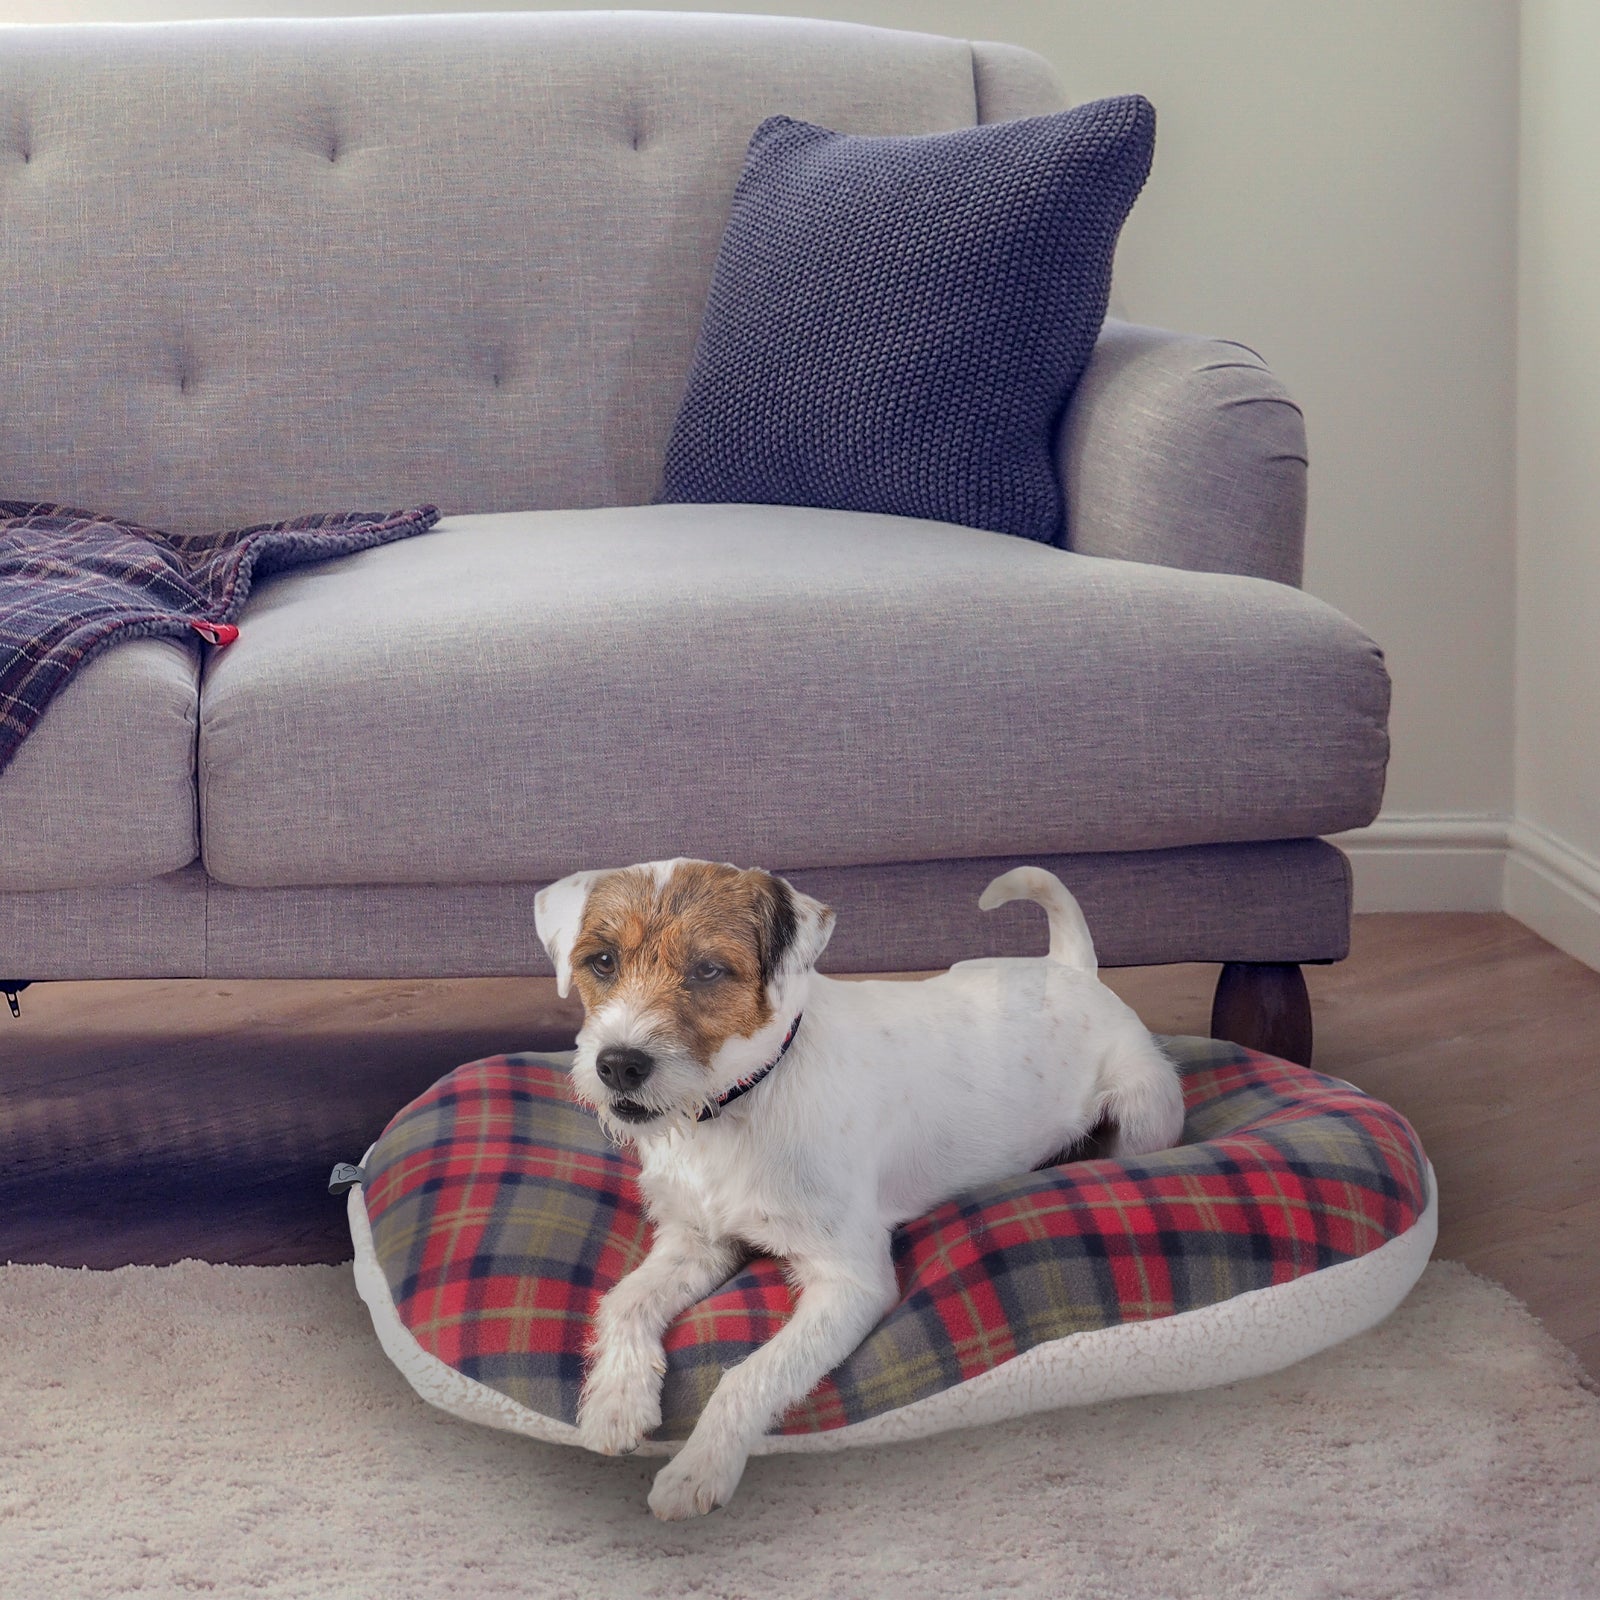 Designer Pet Dog Bowl for Small Dogs Plaid Pet Feeder Pad